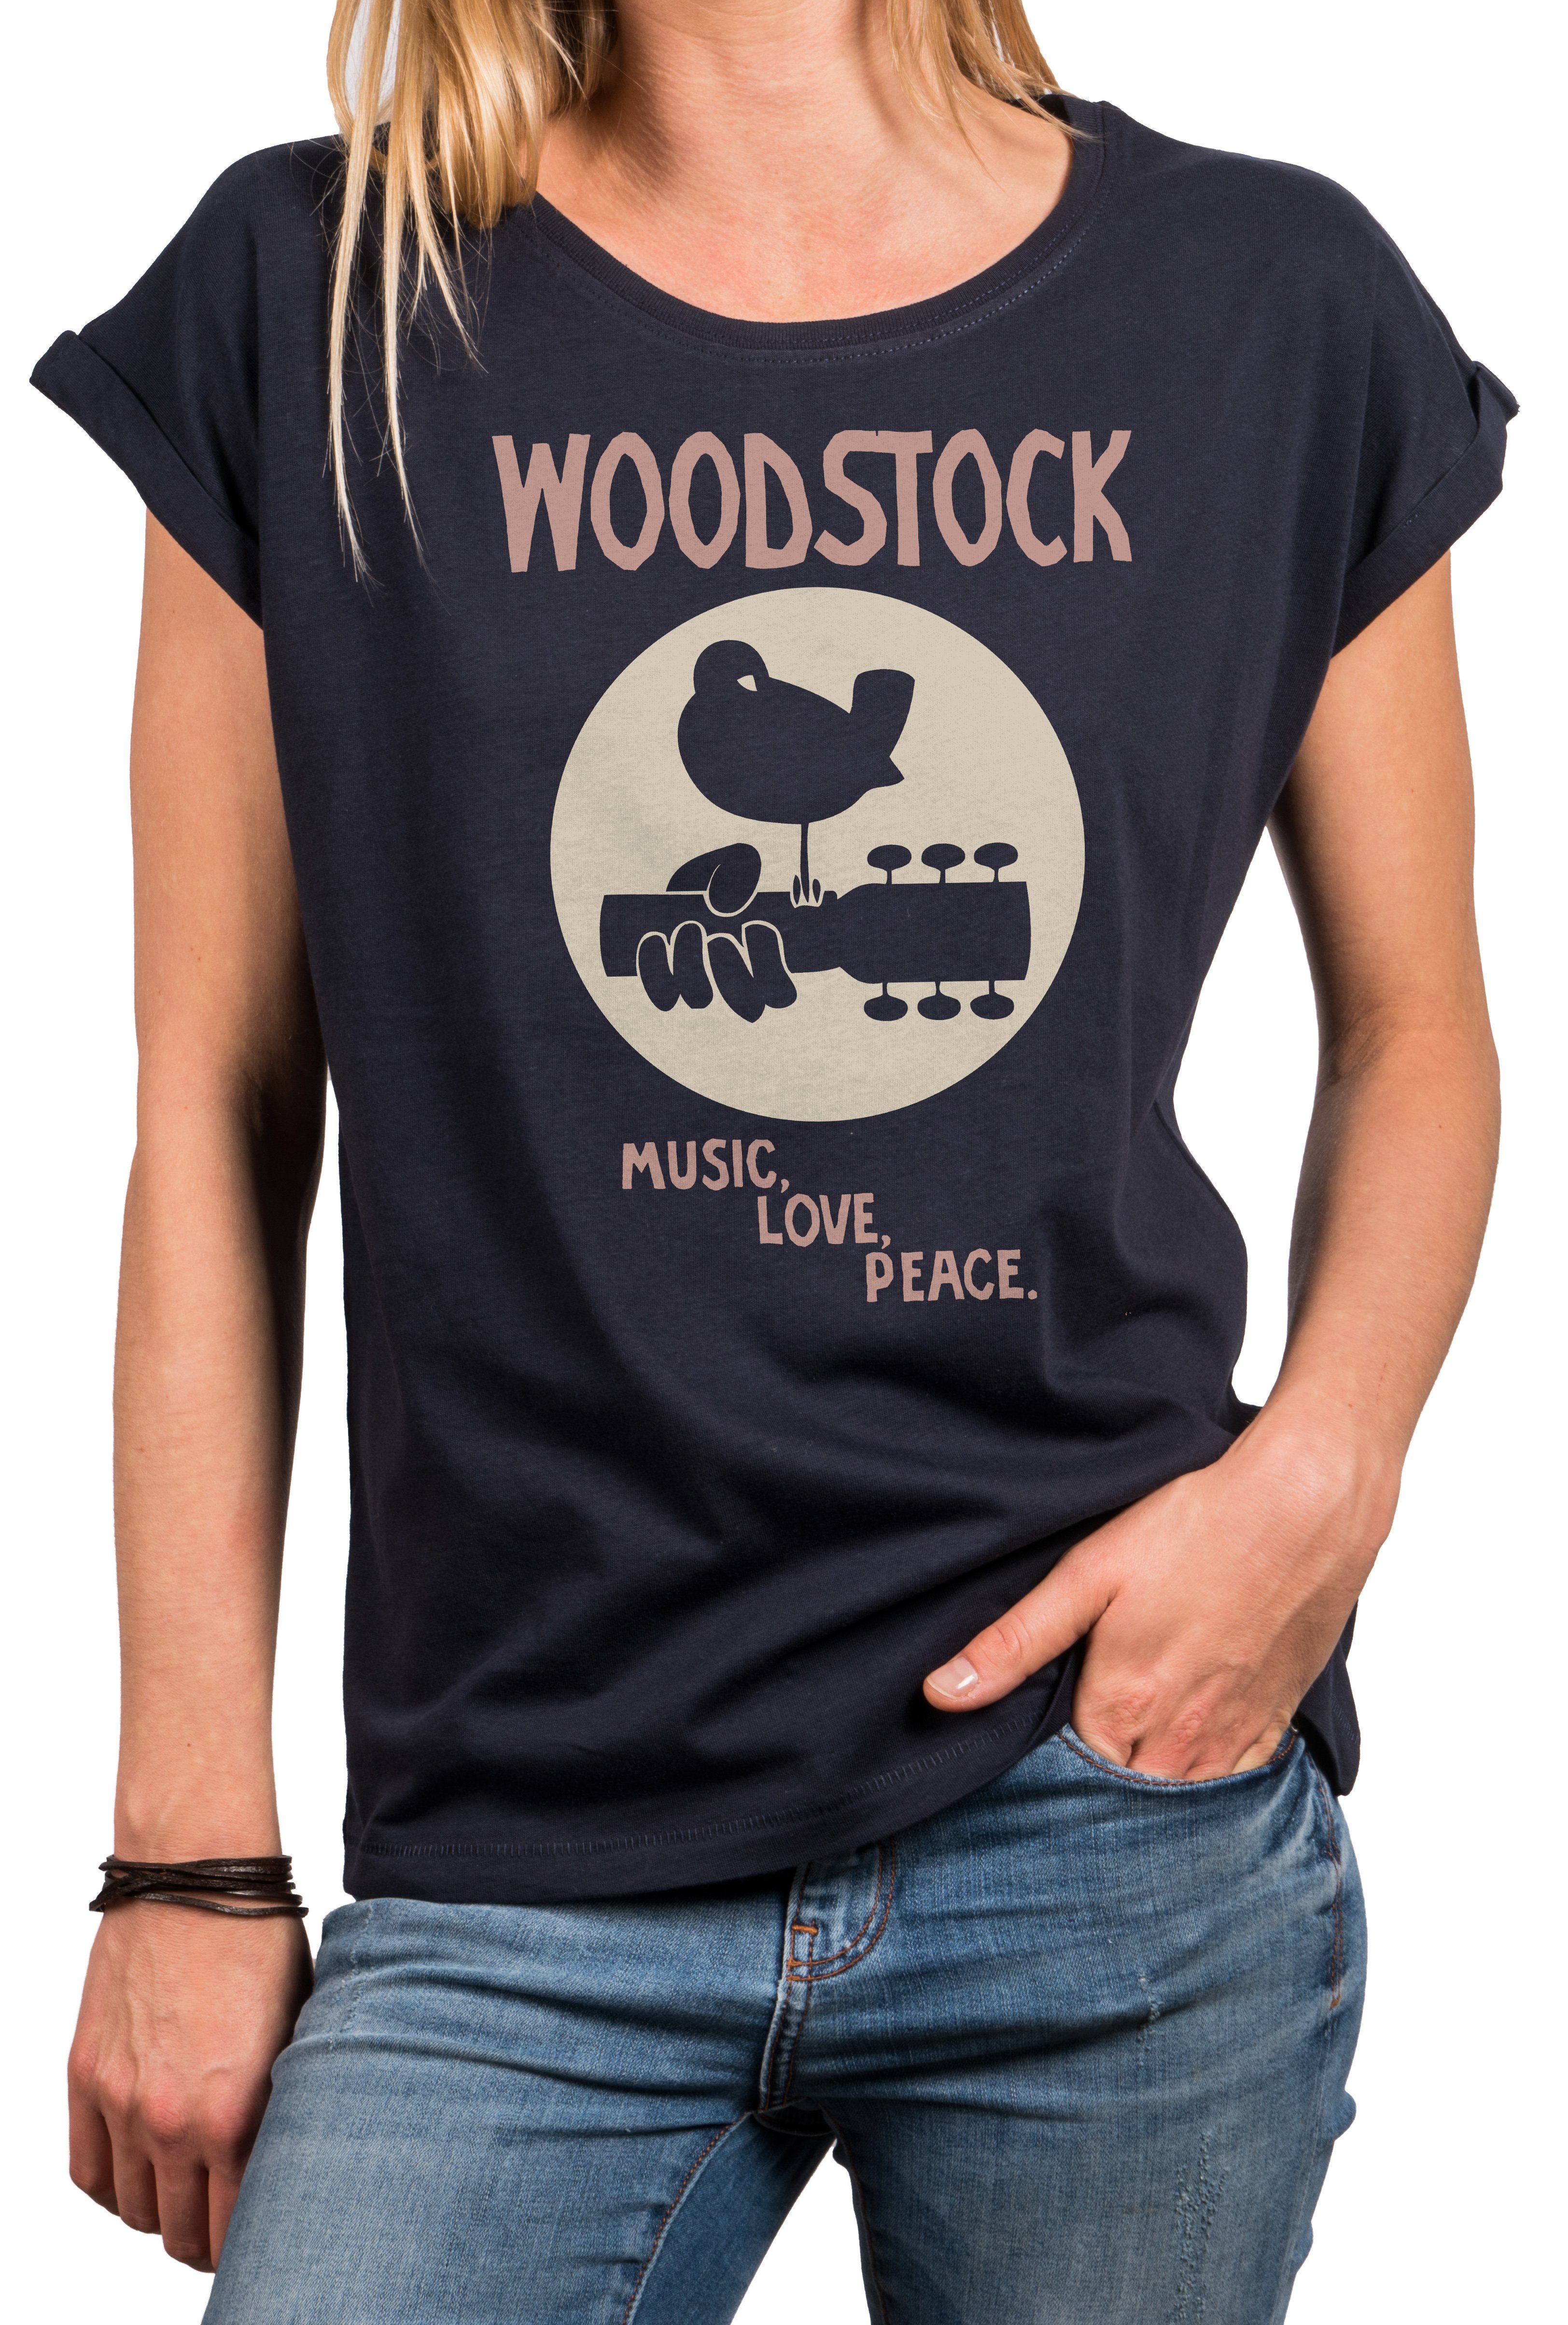 MAKAYA T-Shirt Bandshirt 70er 60er Damen Top Woodstock Druck, große aus Vintage Musik mit Sommer Größen Baumwolle, Hippie